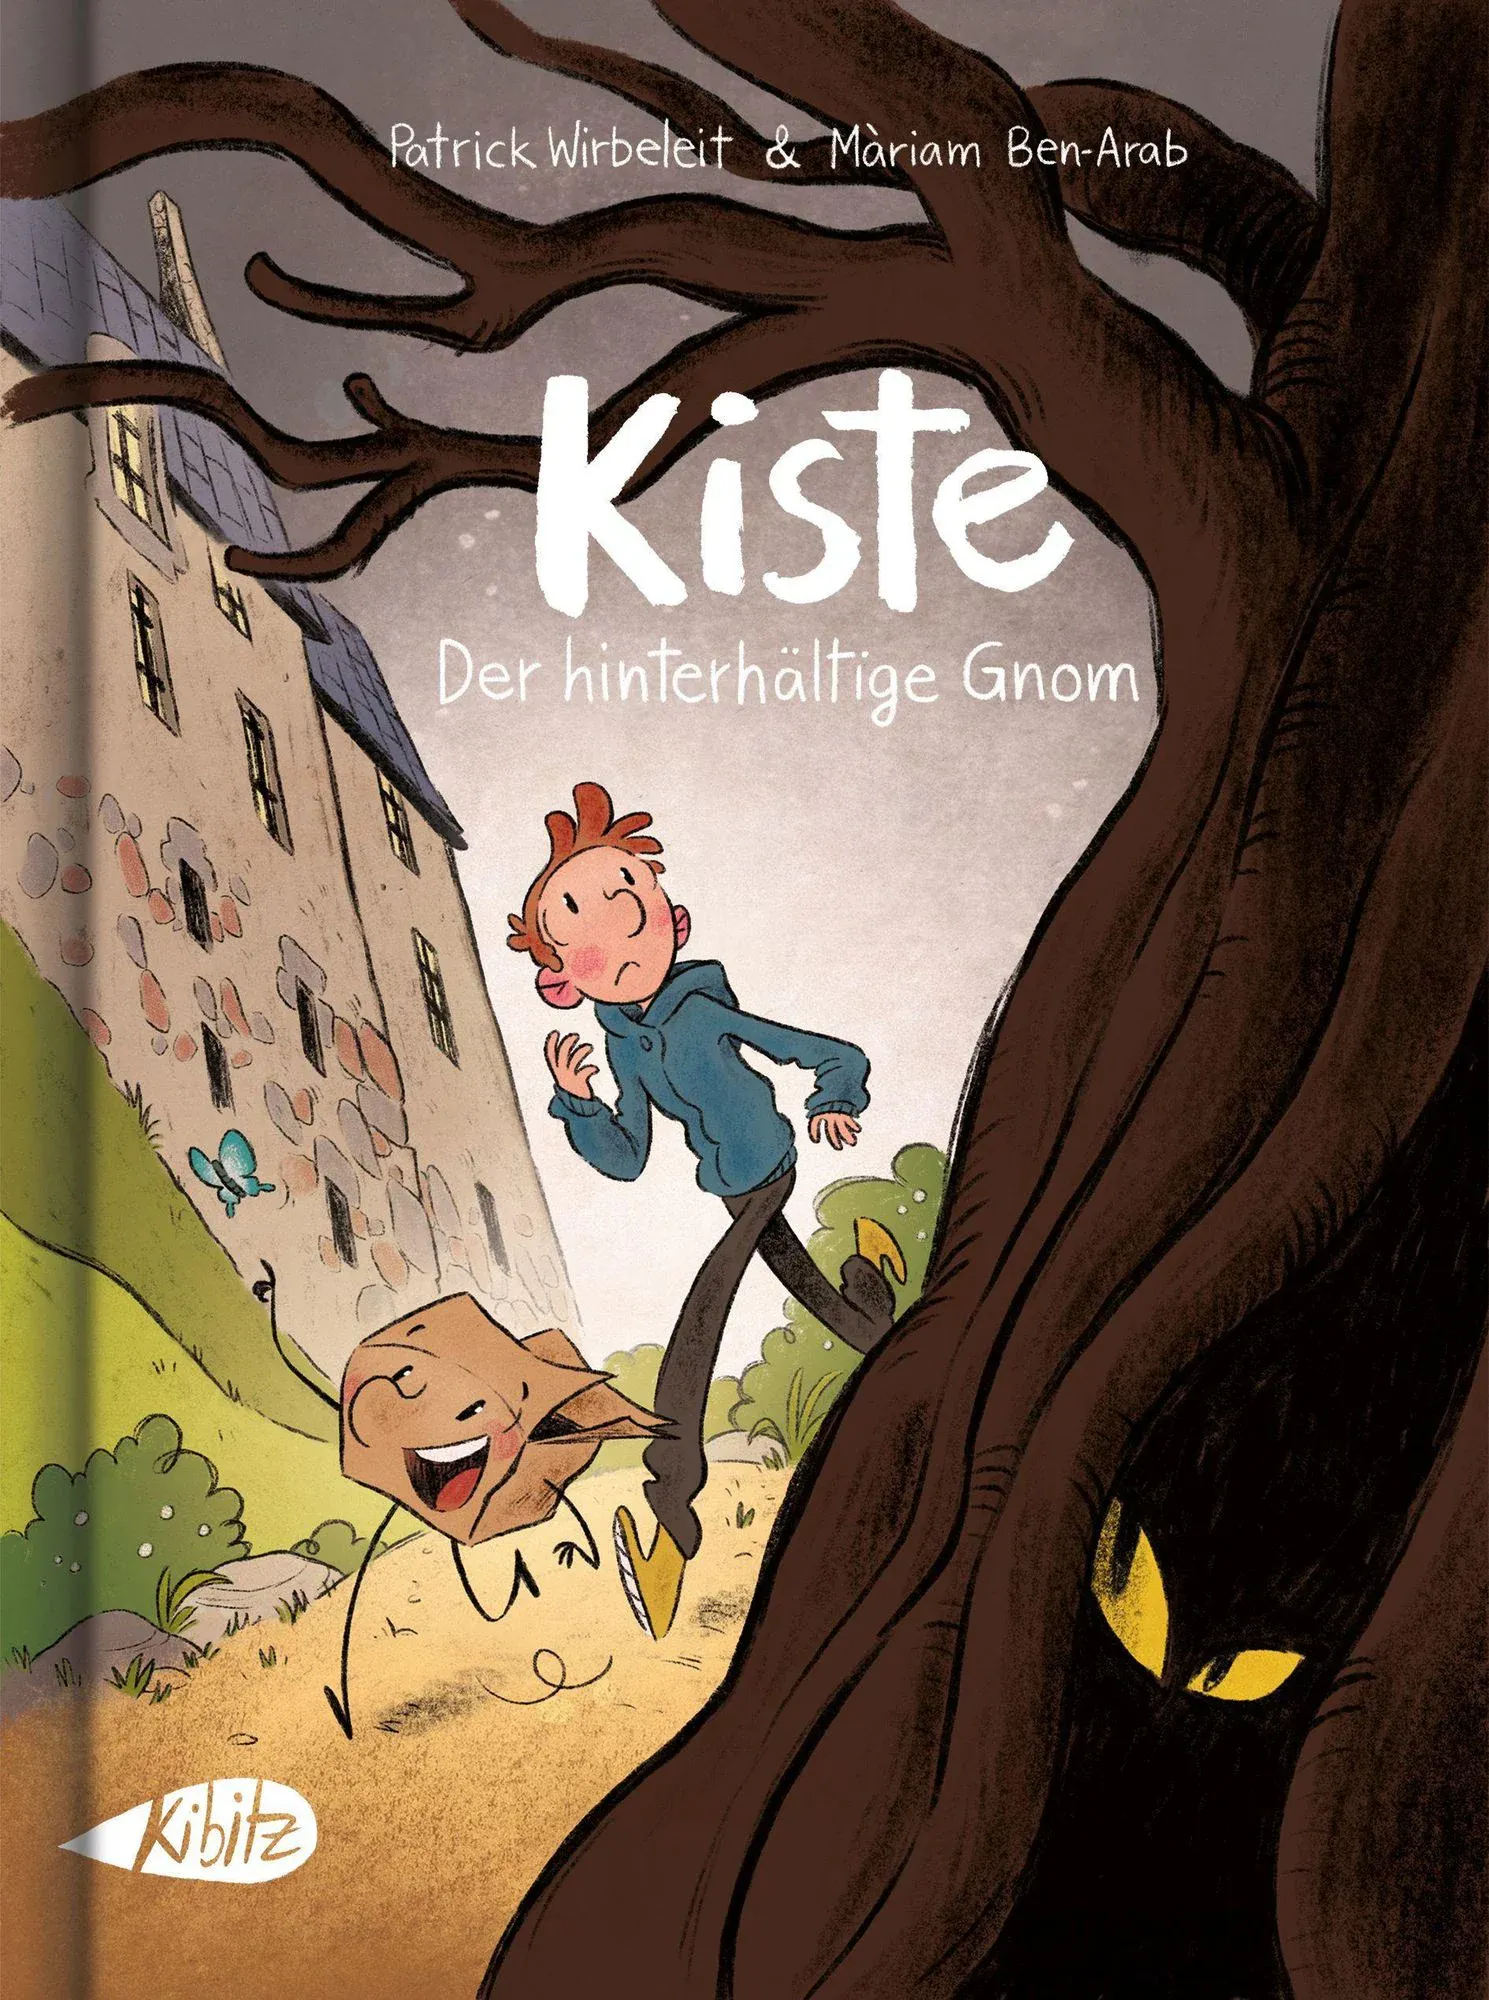 Cover von "Kiste - Der hinterhältige Gnom" von Patrick Wirbeleit und Màriam Ben-Arab aus dem Kibitz Verlag